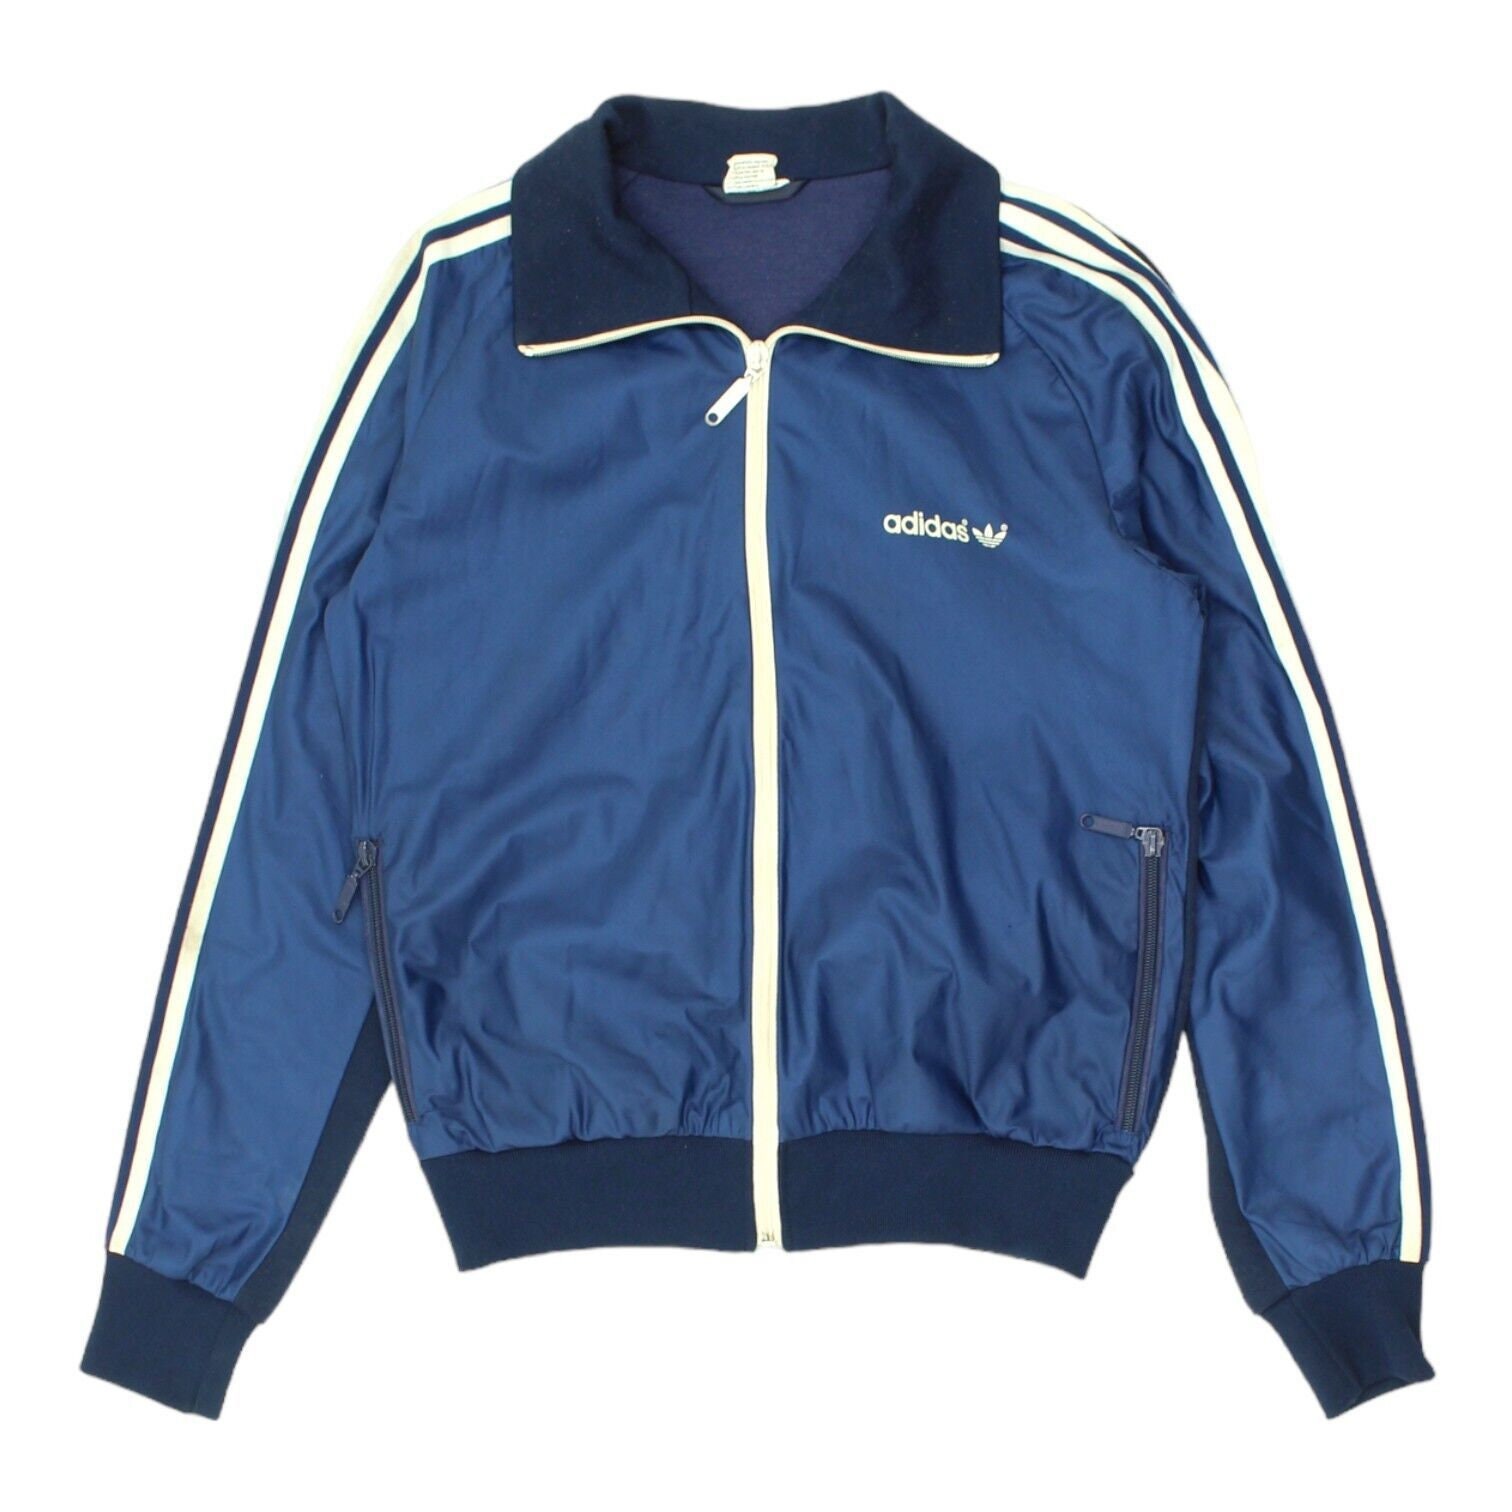 Adidas Originals Mens Navy Soft Shell Track Jacket | Vintage 70s Sportswear  VTG